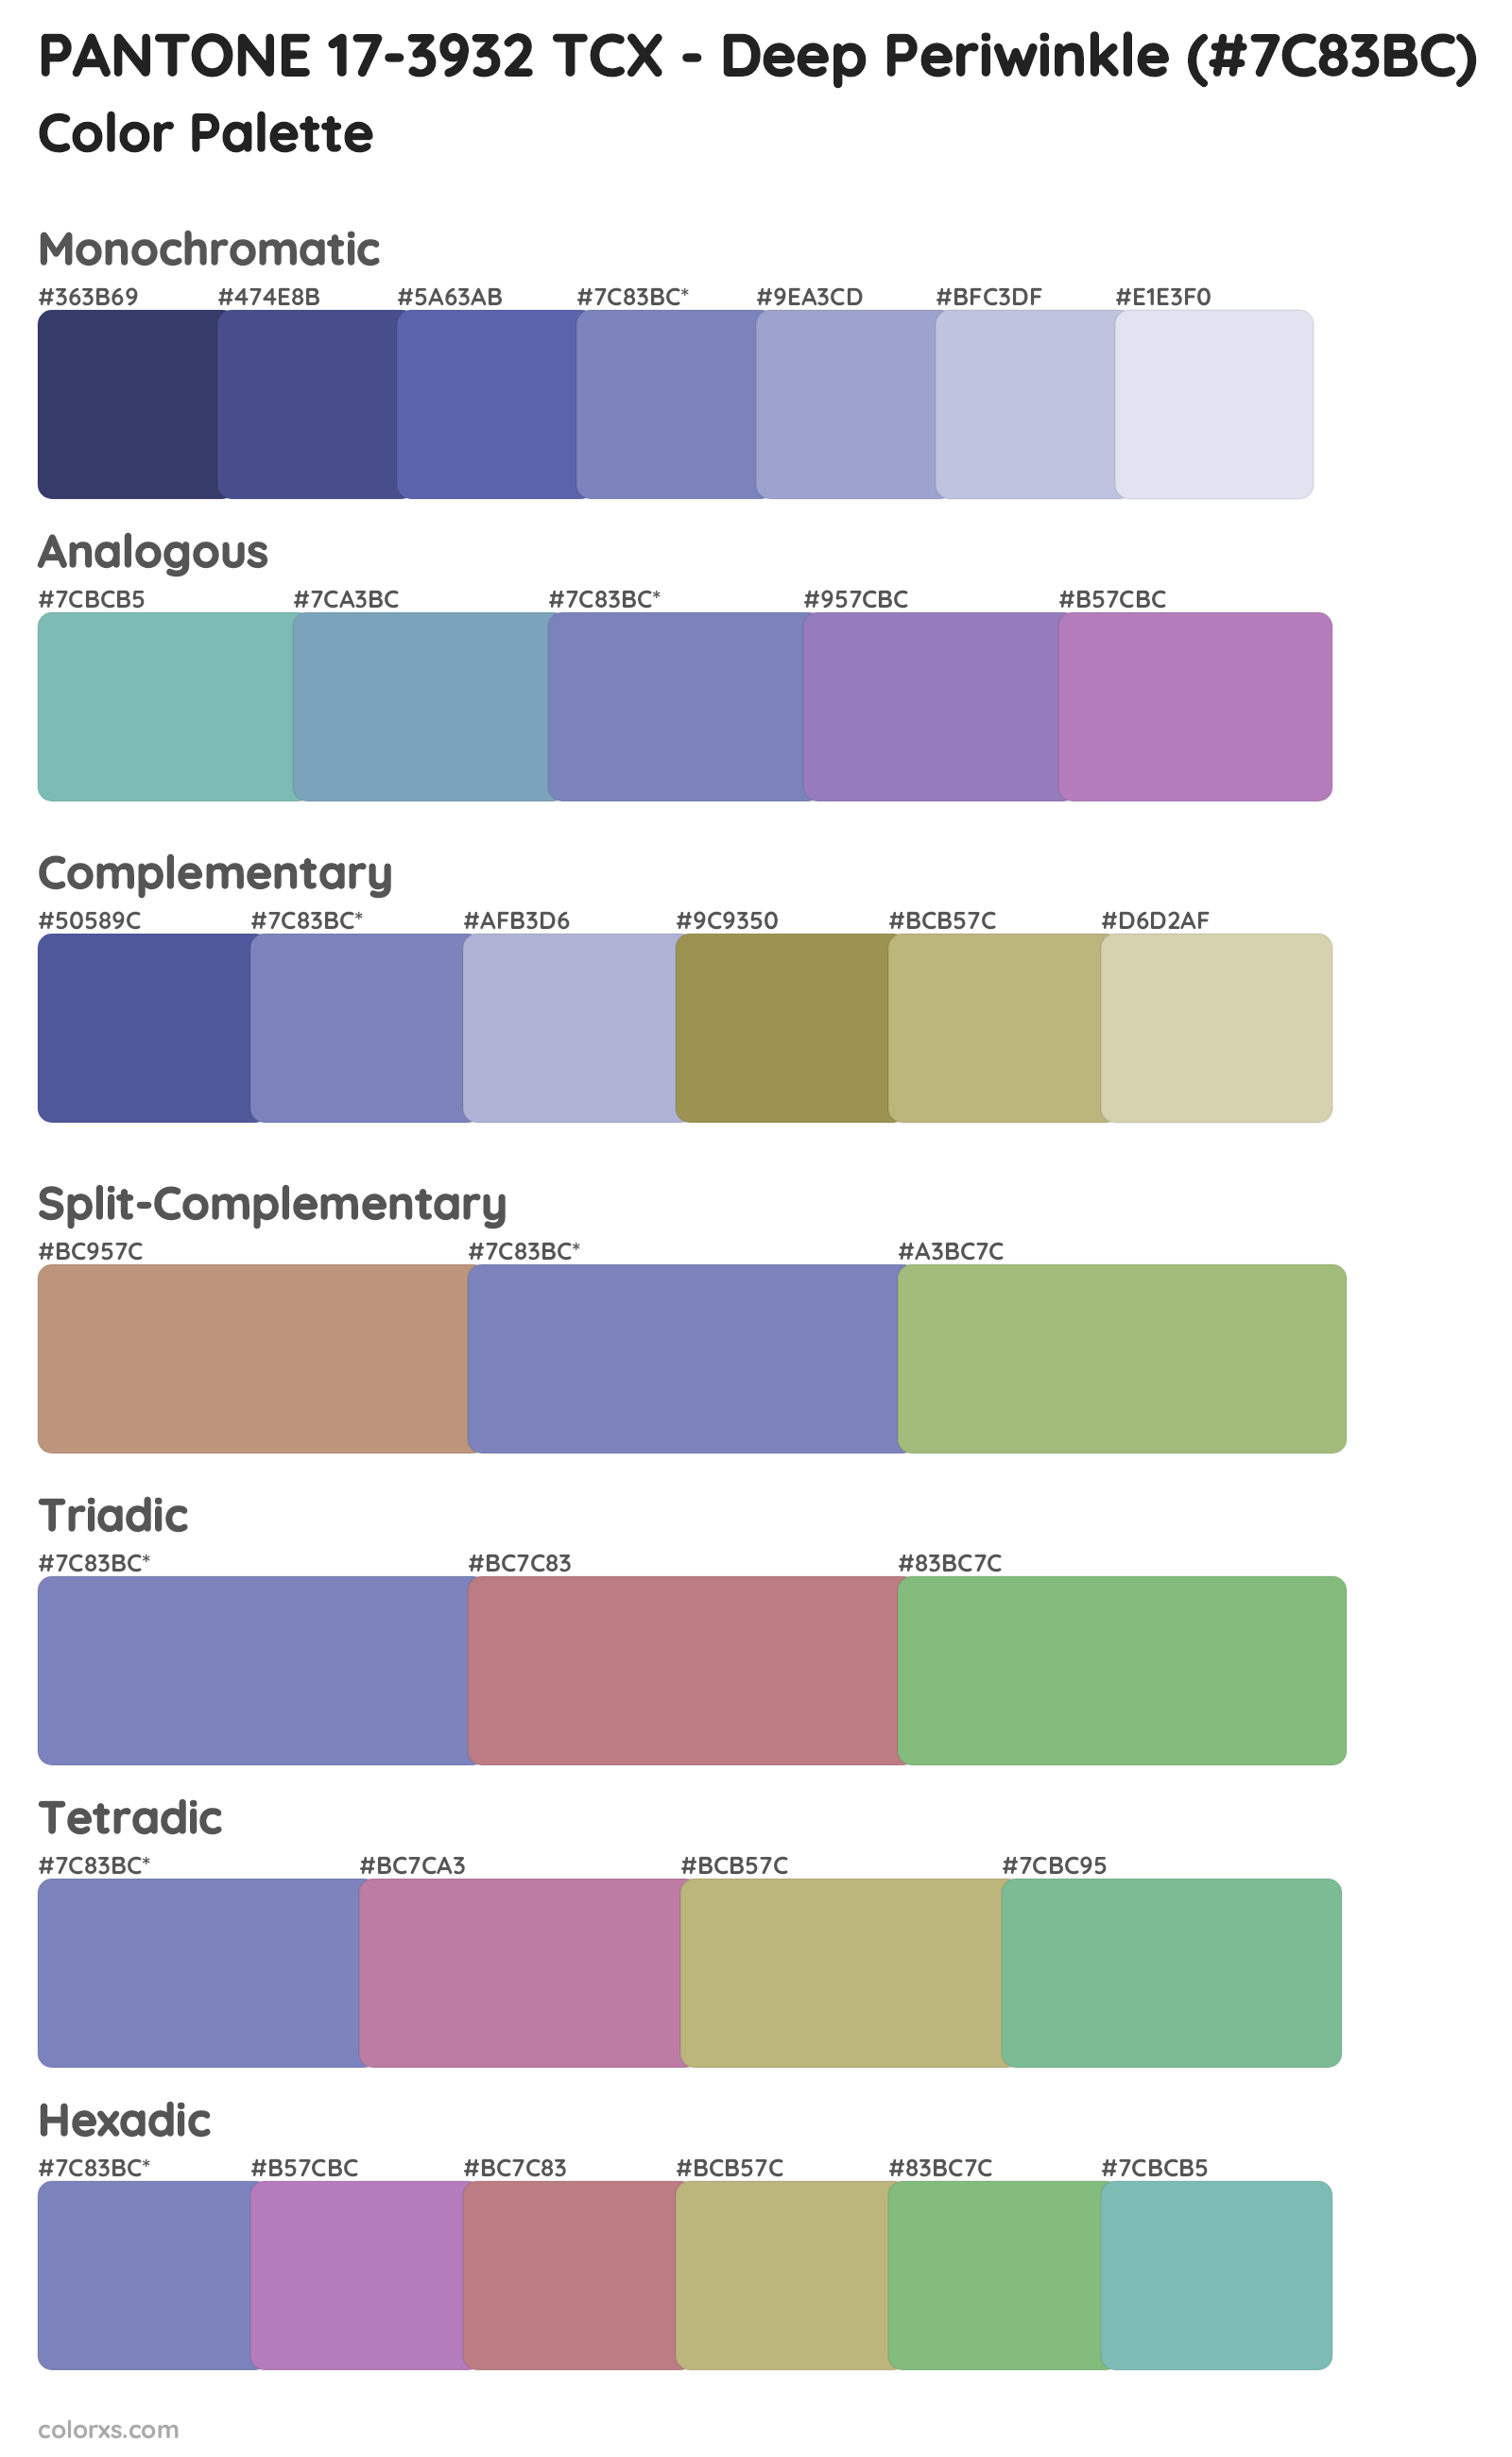 PANTONE 17-3932 TCX - Deep Periwinkle Color Scheme Palettes